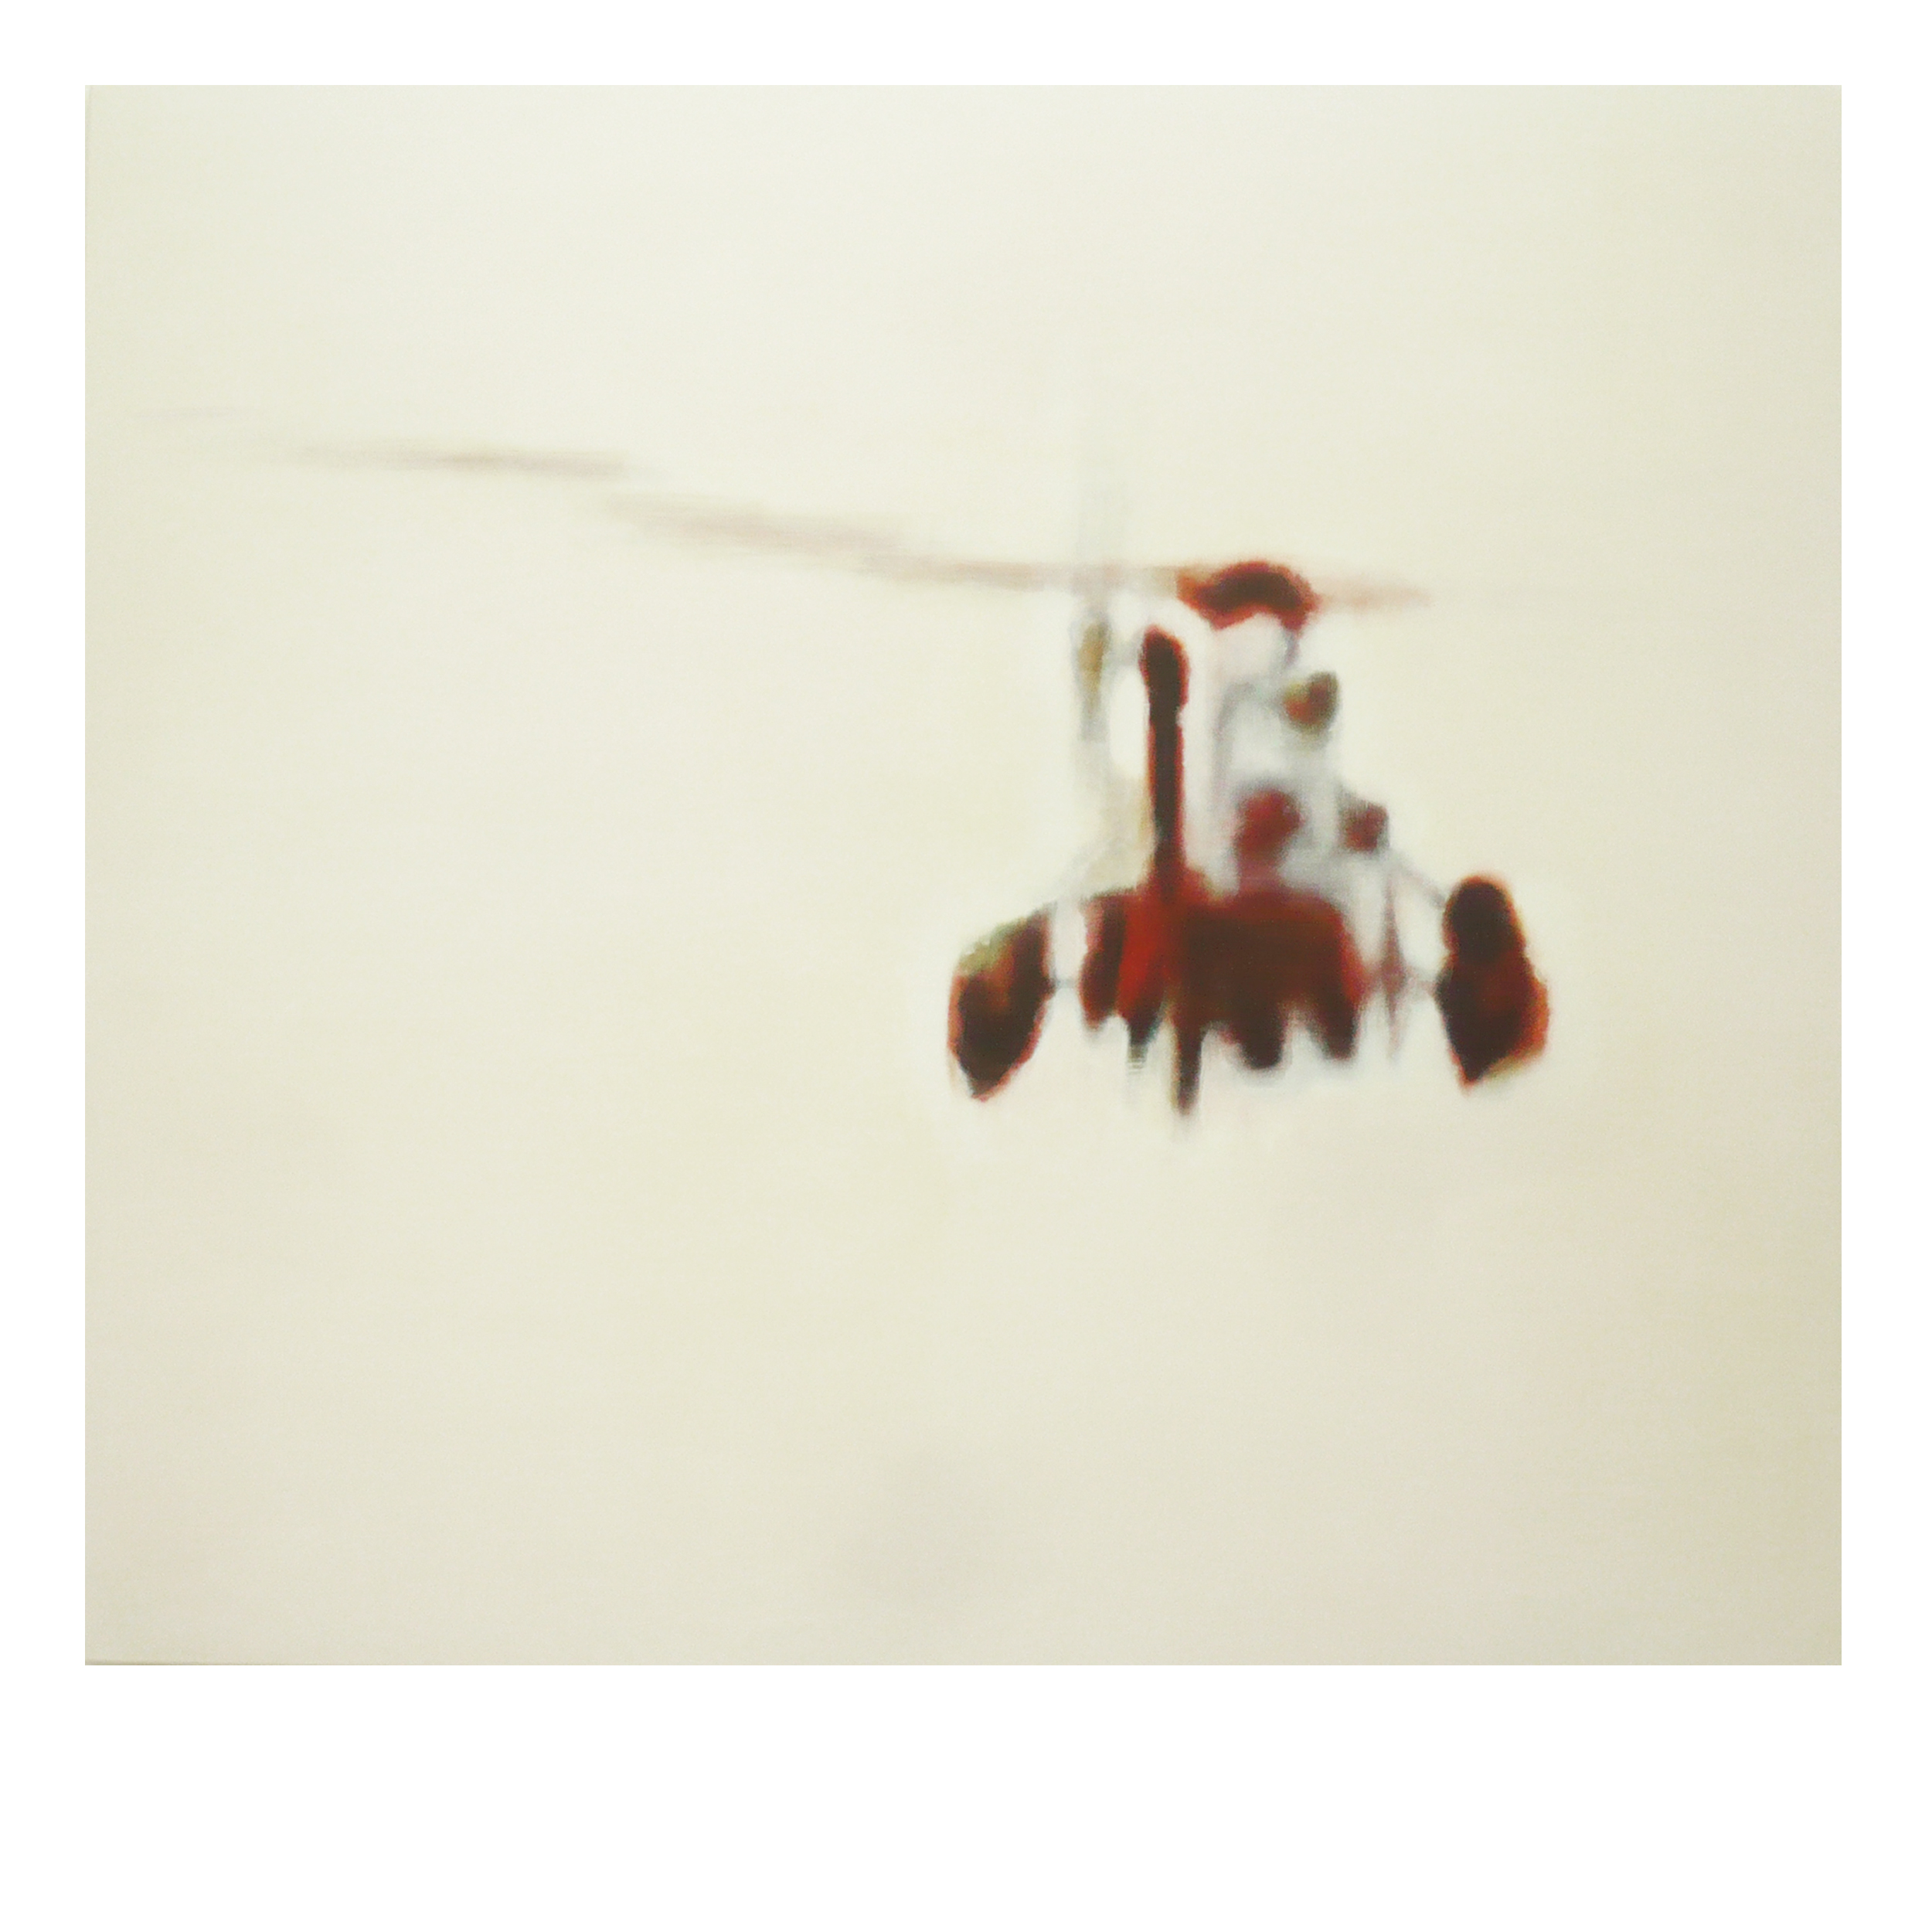  Hubschrauber rot, 2011 135 x 150cm Acryl auf Baumwolle 